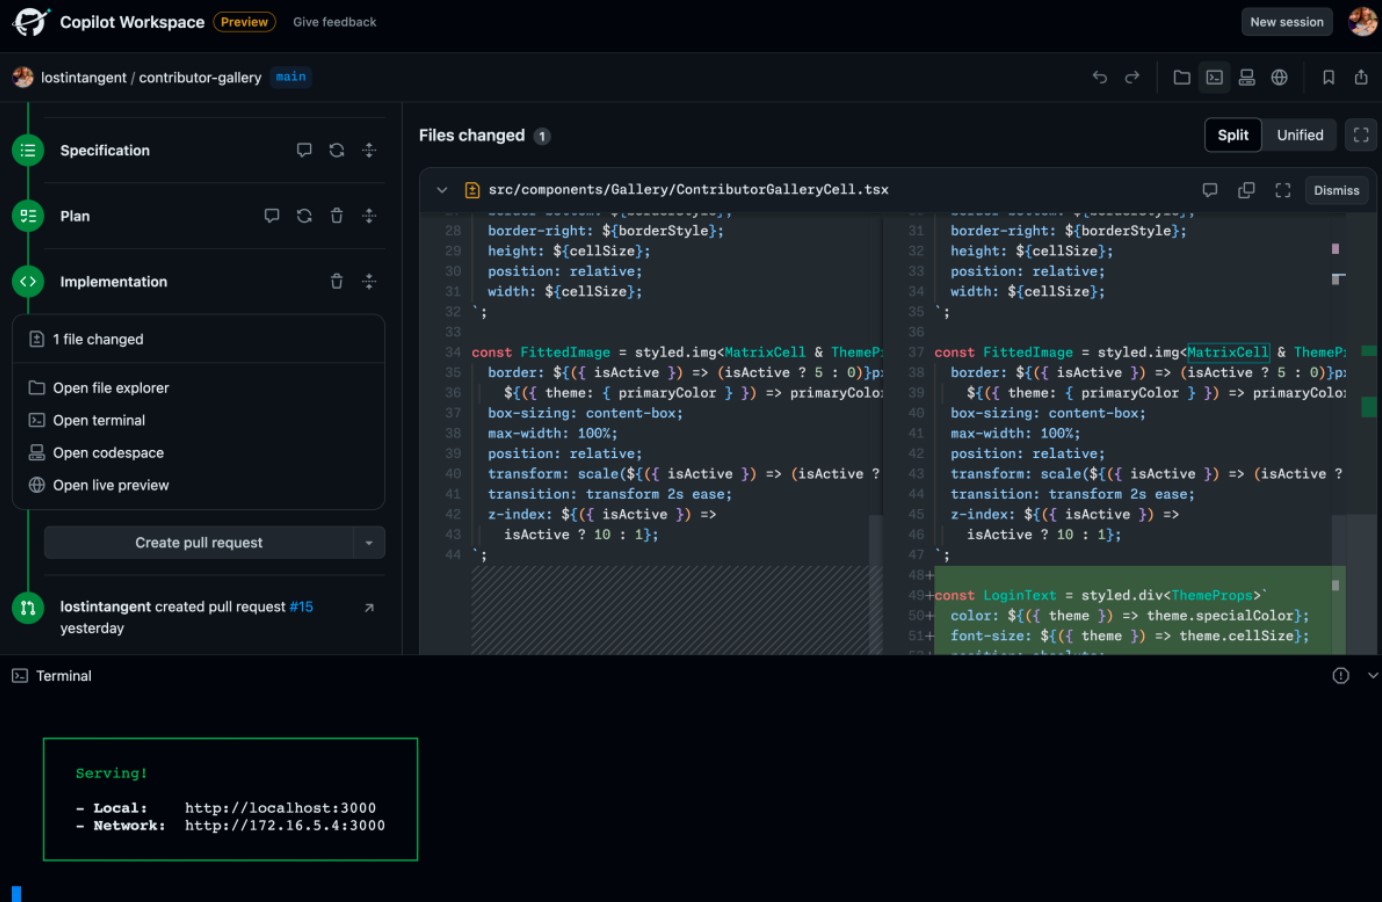 GitHub наступного тижня випустить Copilot Workplace — ШІ-помічника для розробників